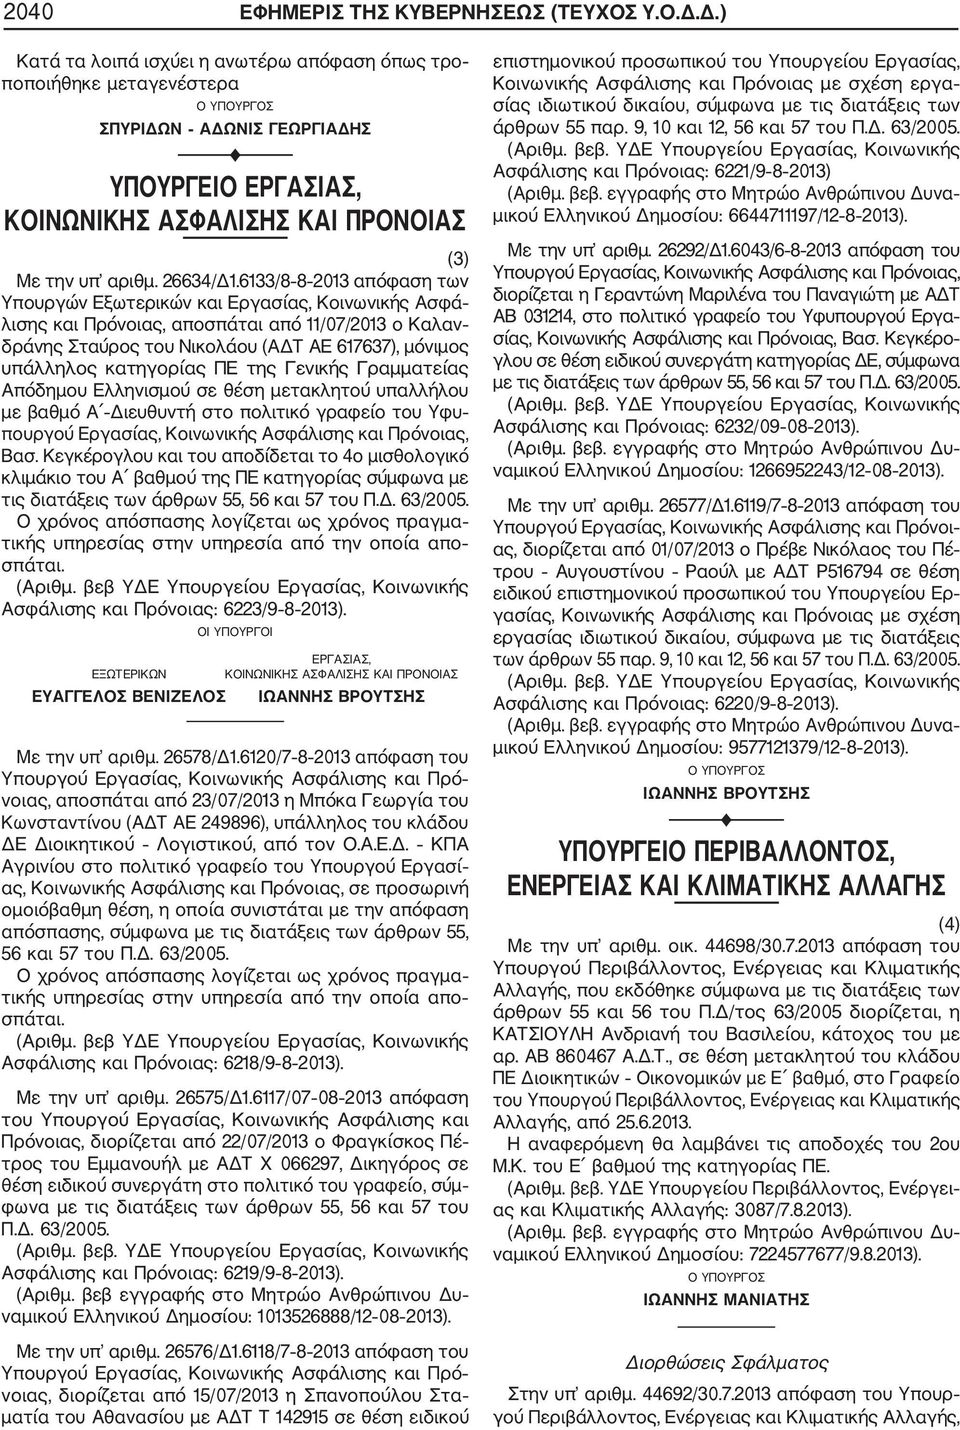 6133/8 8 2013 απόφαση των Υπουργών Εξωτερικών και Εργασίας, Κοινωνικής Ασφά λισης και Πρόνοιας, αποσπάται από 11/07/2013 ο Καλαν δράνης Σταύρος του Νικολάου (ΑΔΤ ΑΕ 617637), μόνιμος υπάλληλος